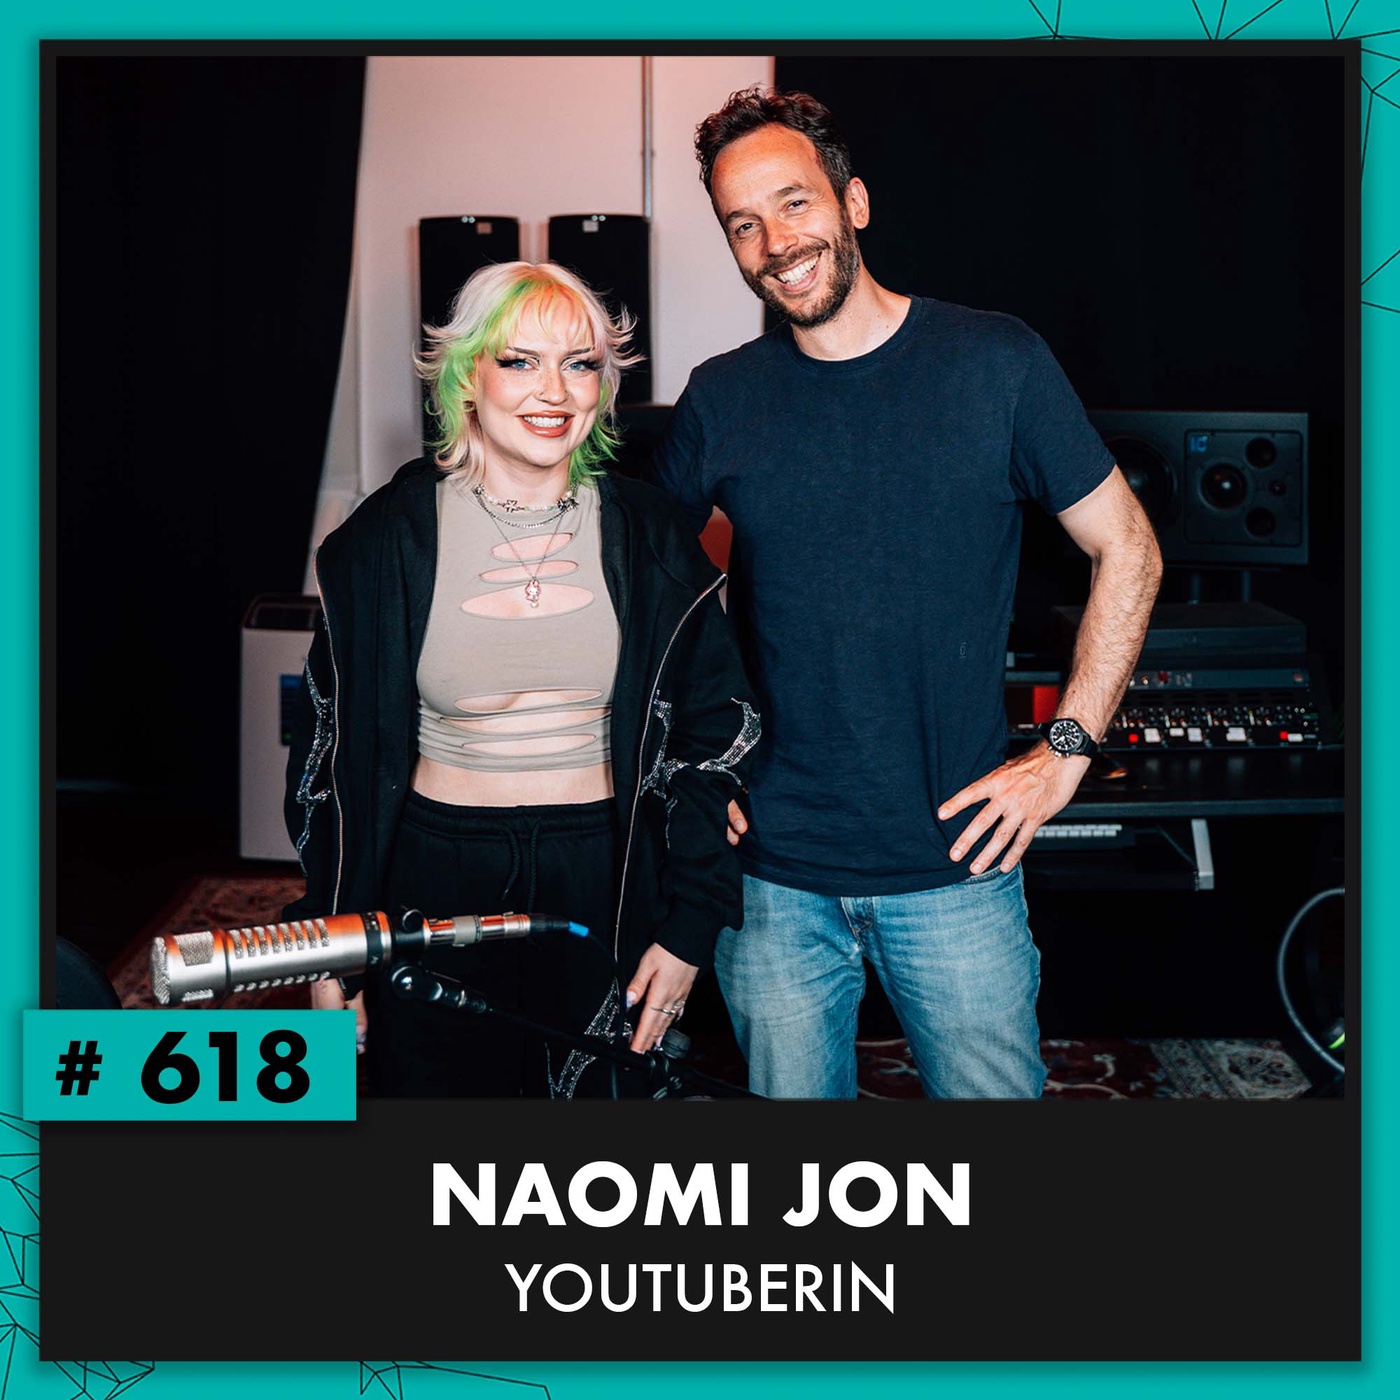 Youtube-Star Naomi Jon (#618)